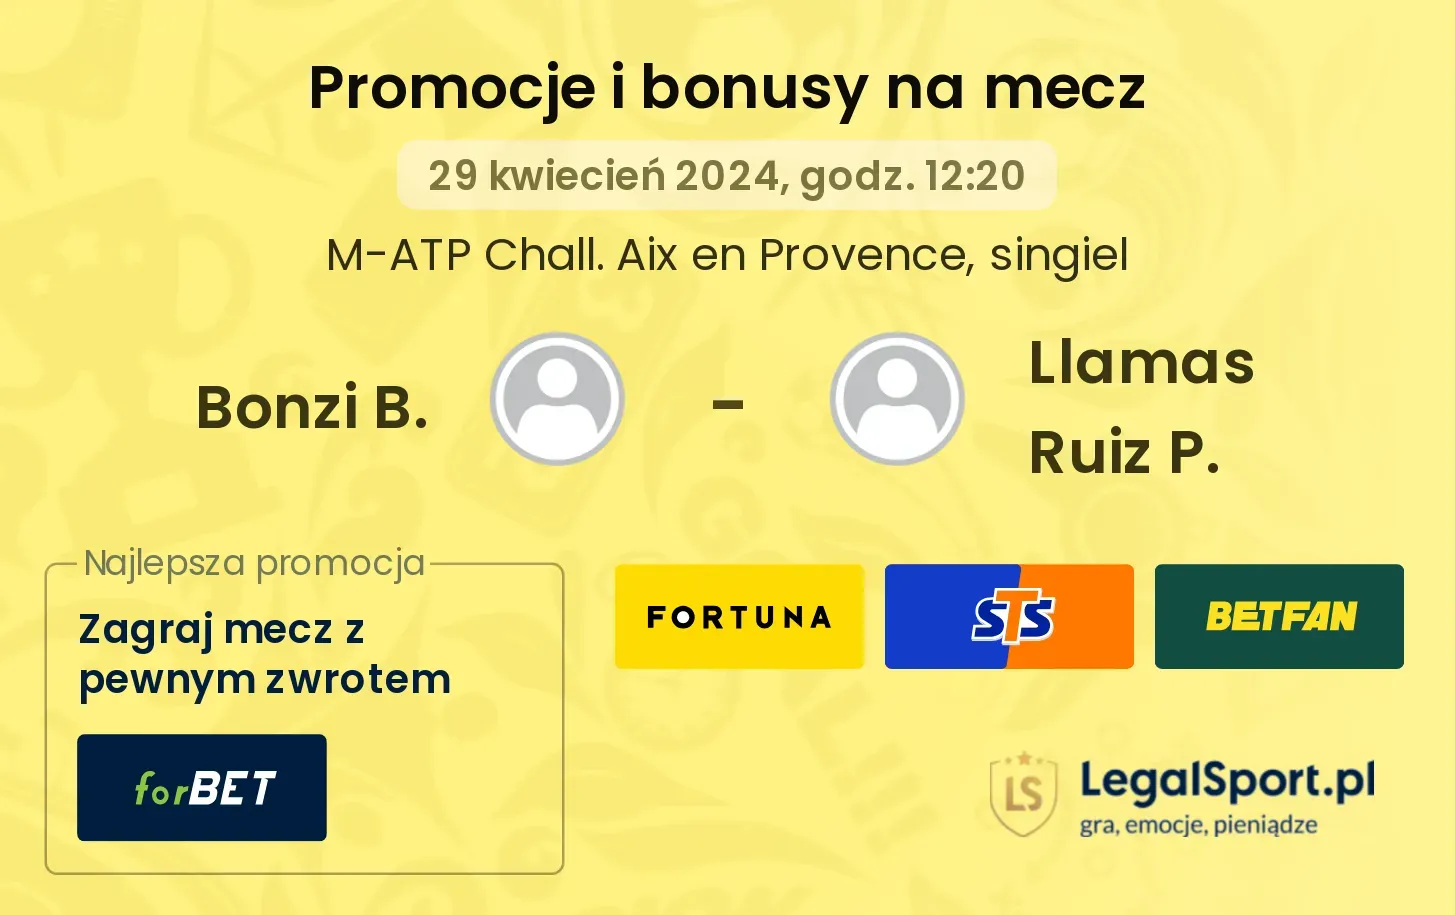 Bonzi B. - Llamas Ruiz P. promocje bonusy na mecz